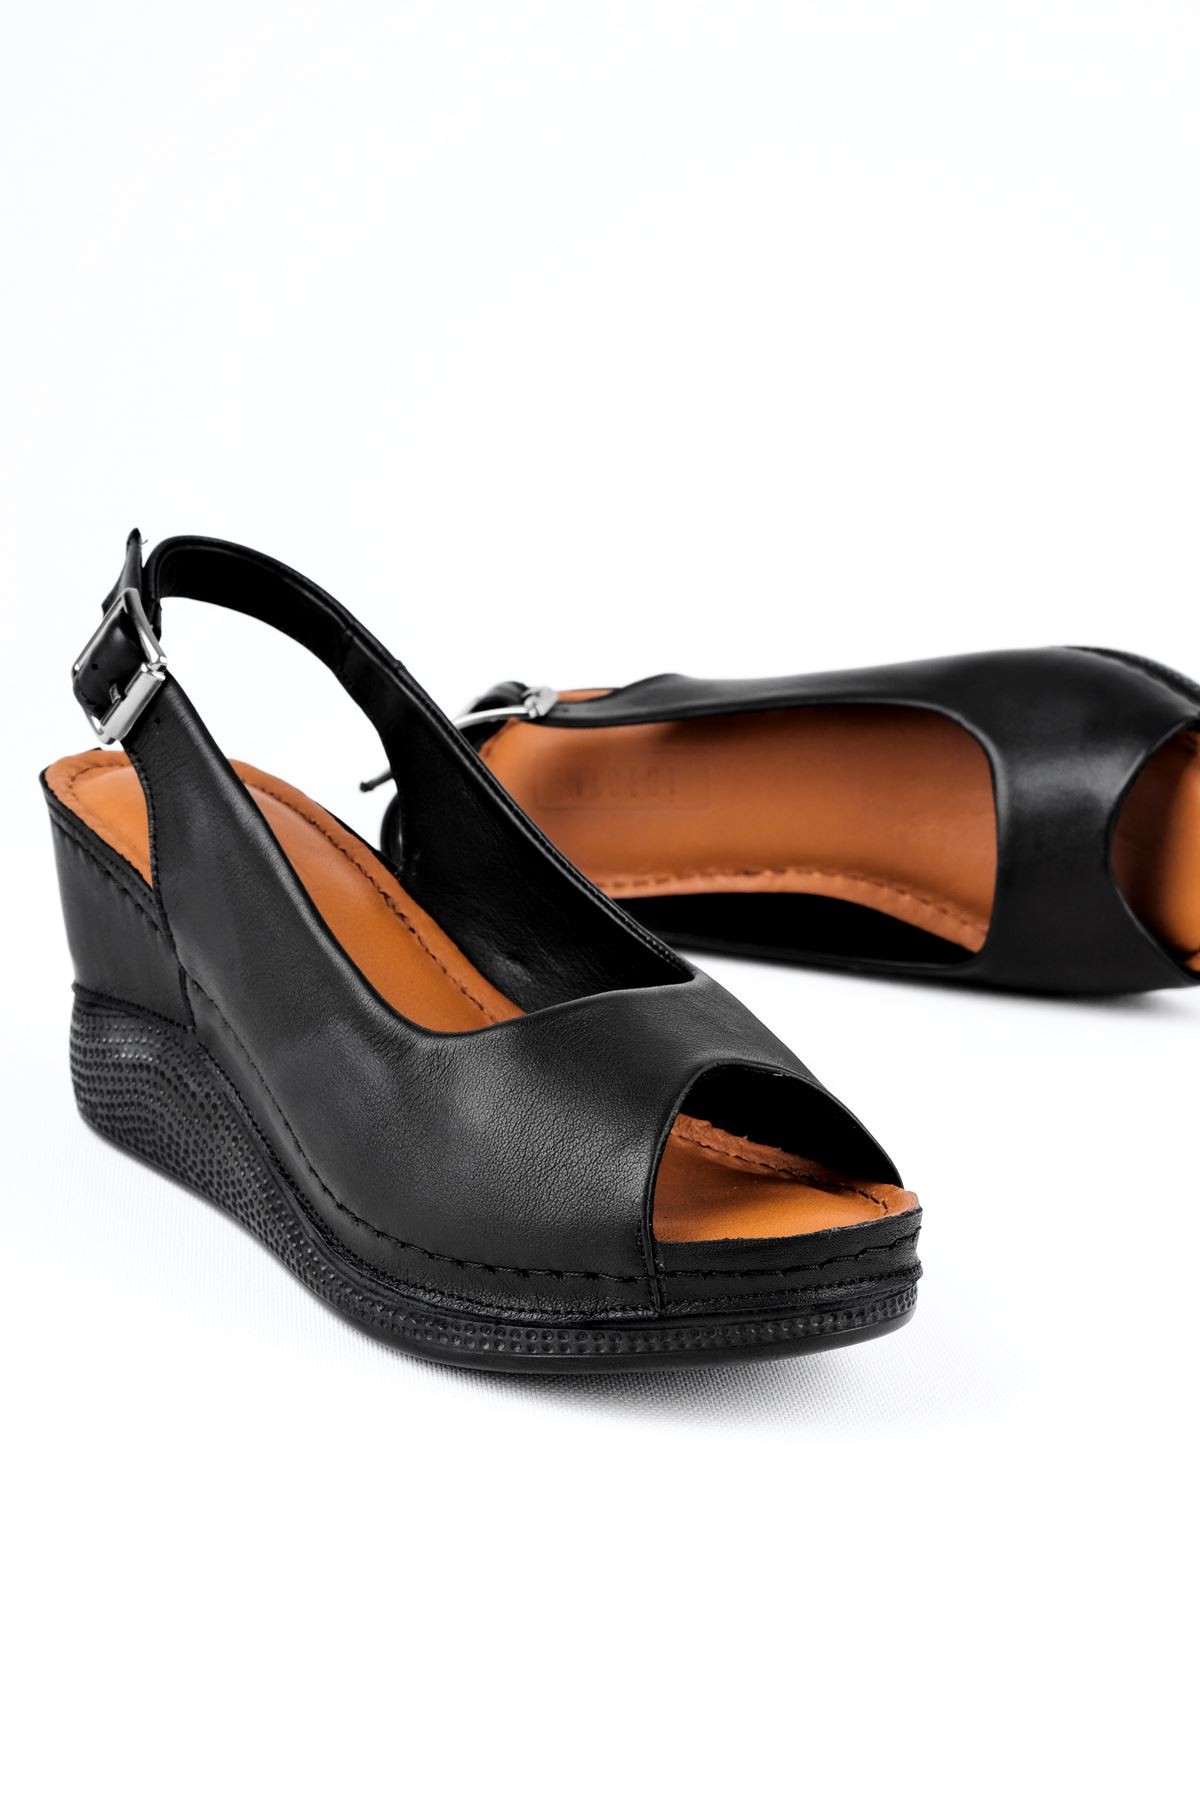 Merib Kadın Hakiki Deri Dolgulu Topuklu Günlük Ayakkabı - Siyah